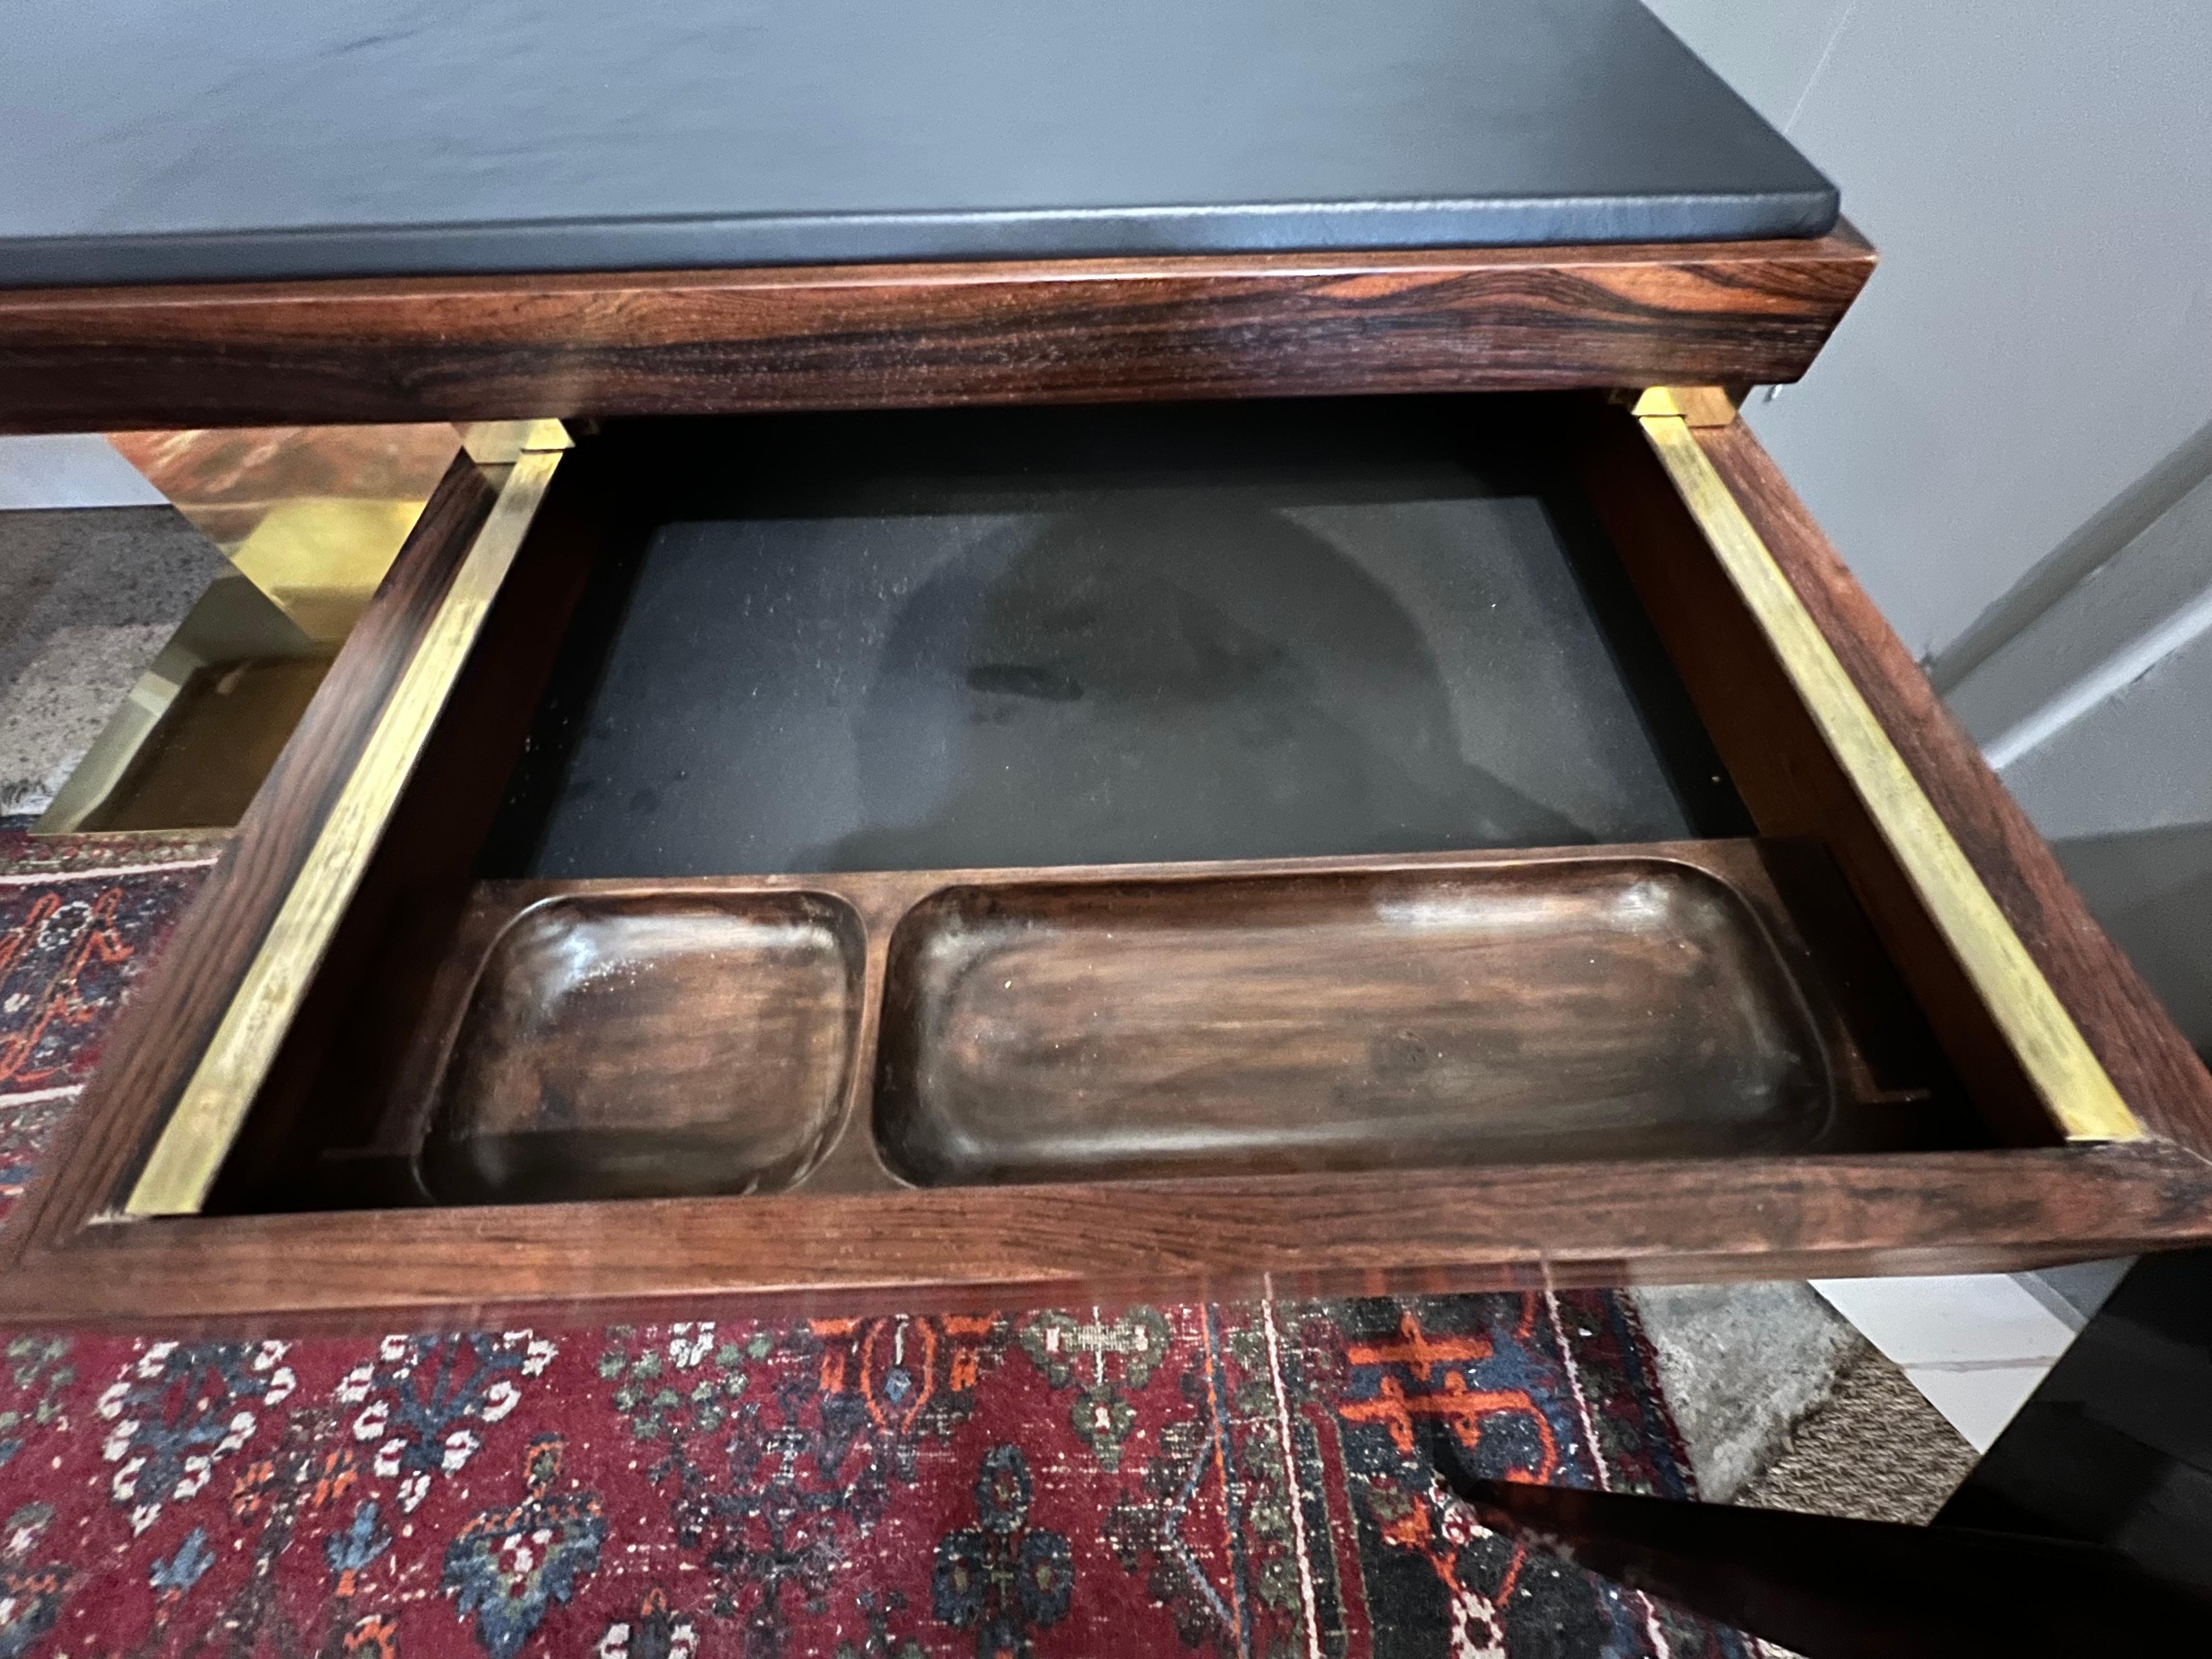 Der Schreibtisch ist aus Zebraholz gefertigt. Die Tischplatte ist mit braunem Rindsleder neu gepolstert. Auf der linken Seite befindet sich eine breite Schublade für Akten und auf der rechten Seite eine kleinere Schublade. Der Schreibtisch wird